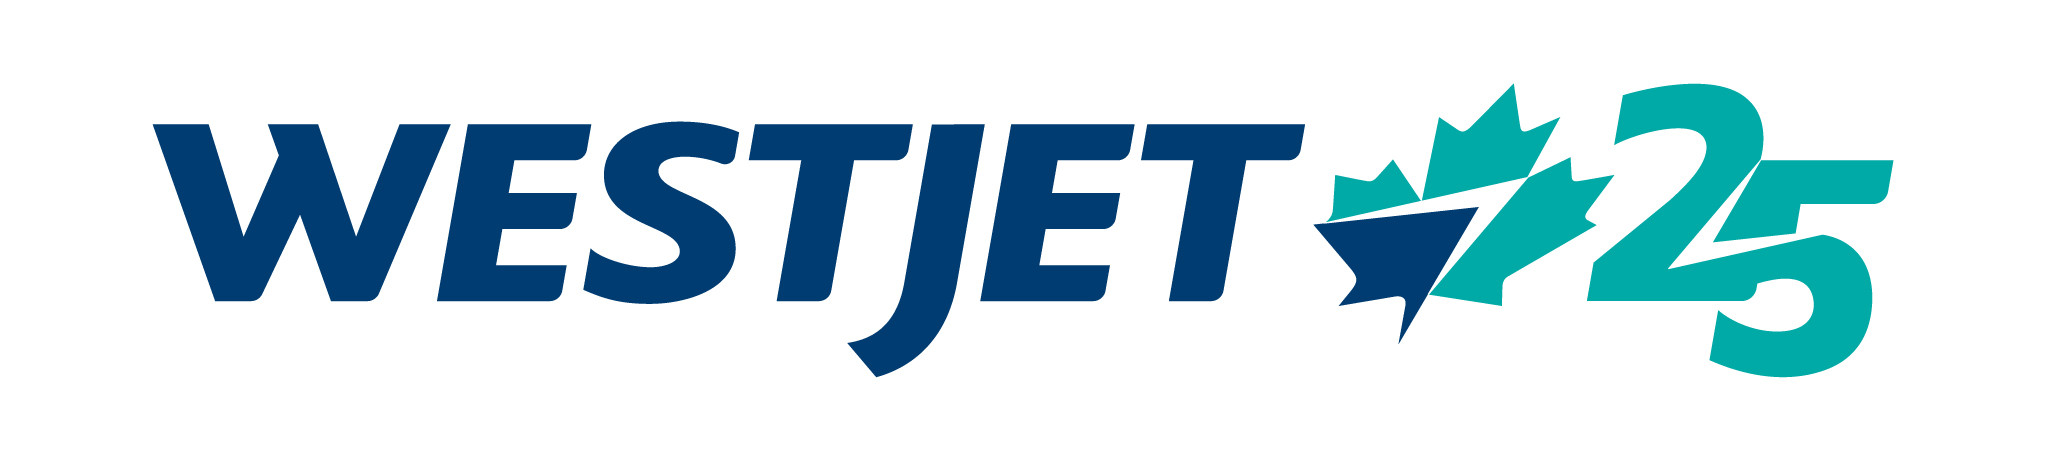 Le Groupe de sociétés WestJet réagit à la déclaration faite cet après-midi par le ministre des Transports, Marc Garneau